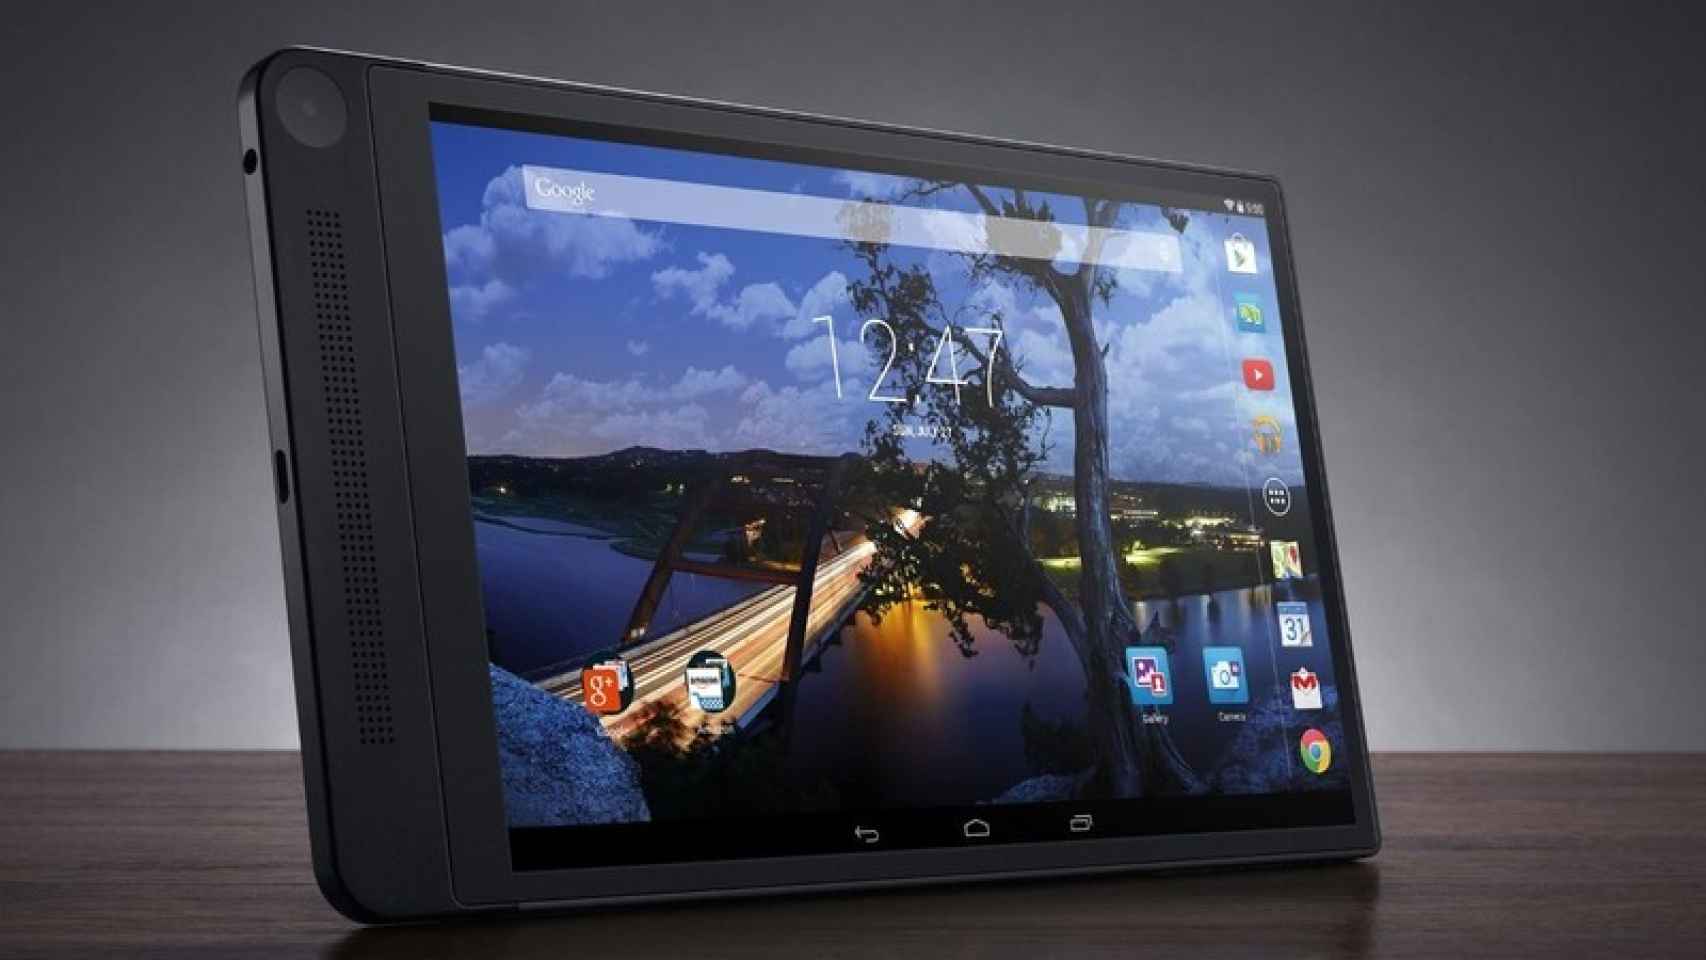 Dell Venue 8 7000, la nueva tablet más delgada del mundo: 6 milímetros